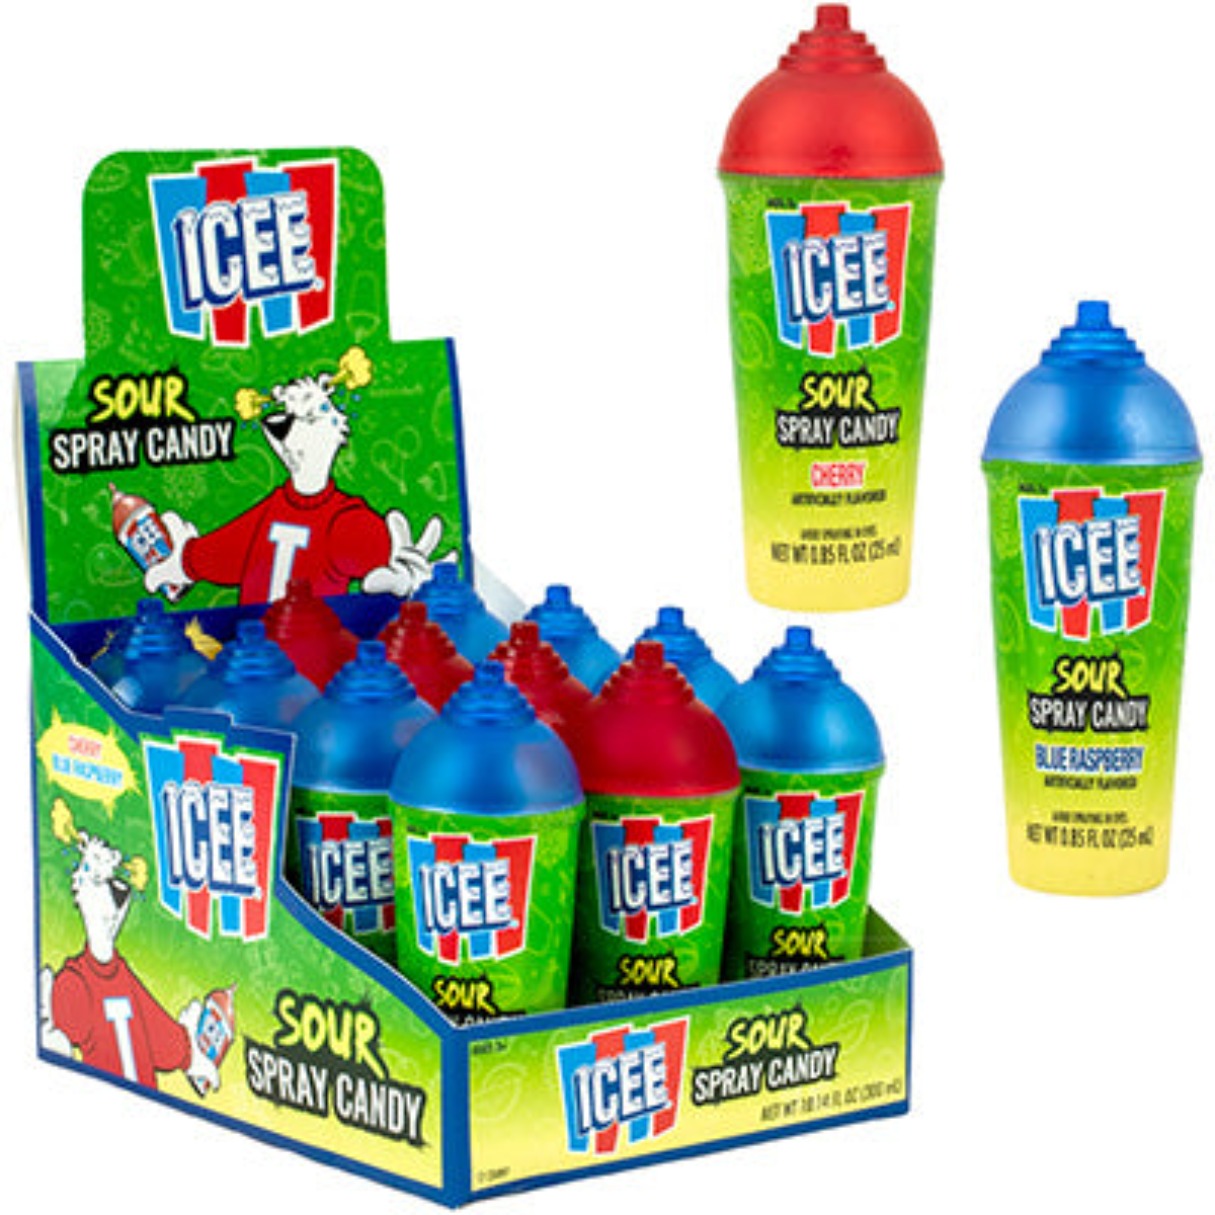 Koko's ICEE Sour Spray Candy Display Box 0.85oz - 96ct